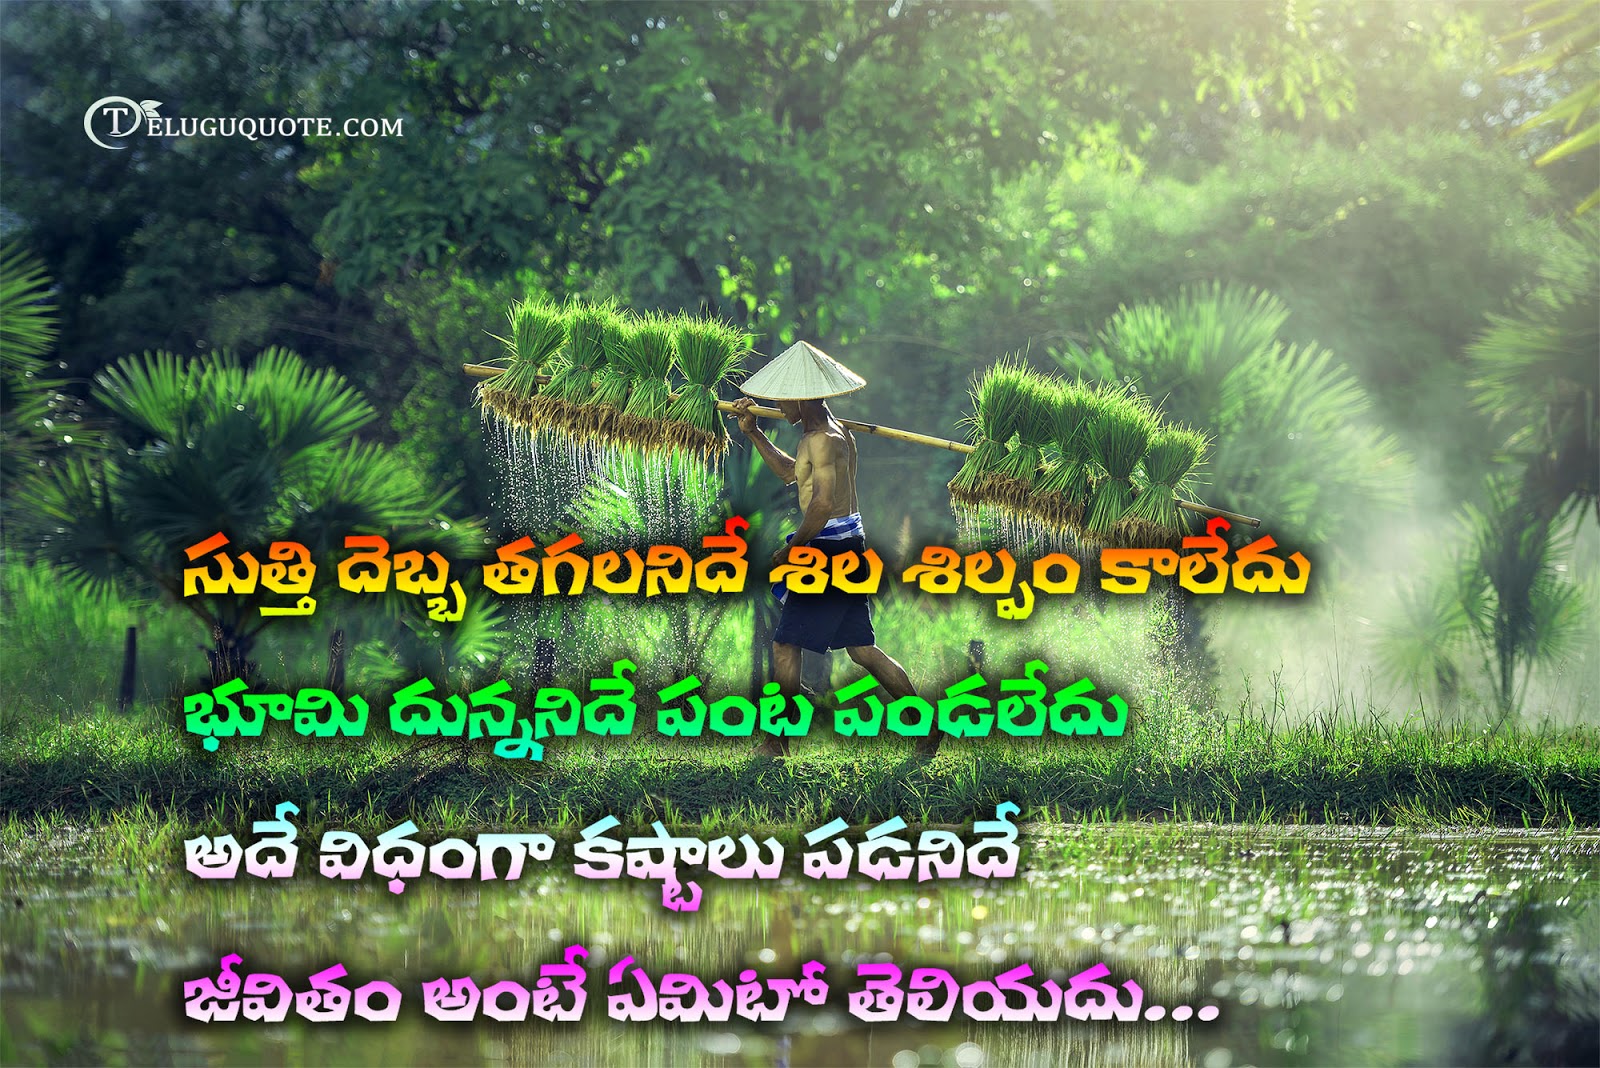 Farmer Quotes In Telugu